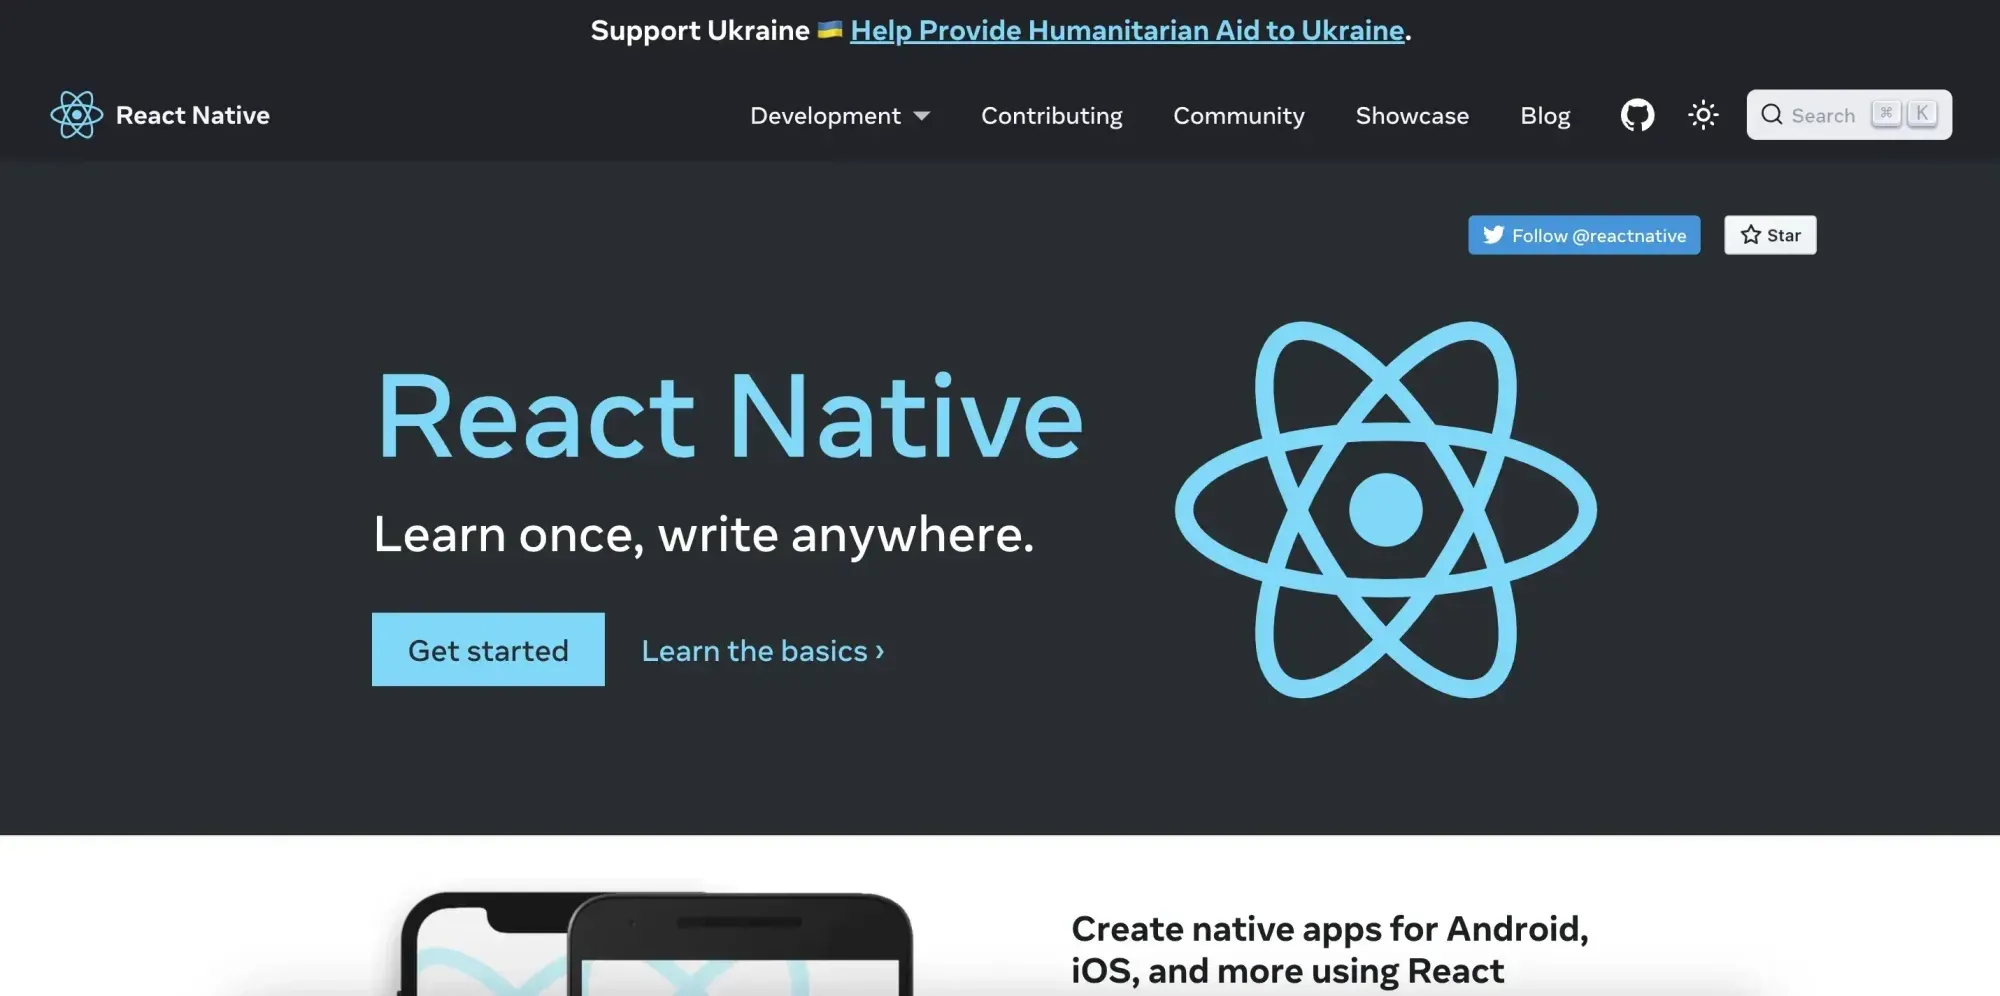 Grauer und weißer Hintergrund, hellblaue Schrift "React Native" und ein Logo, das wie ein Atom aussieht..